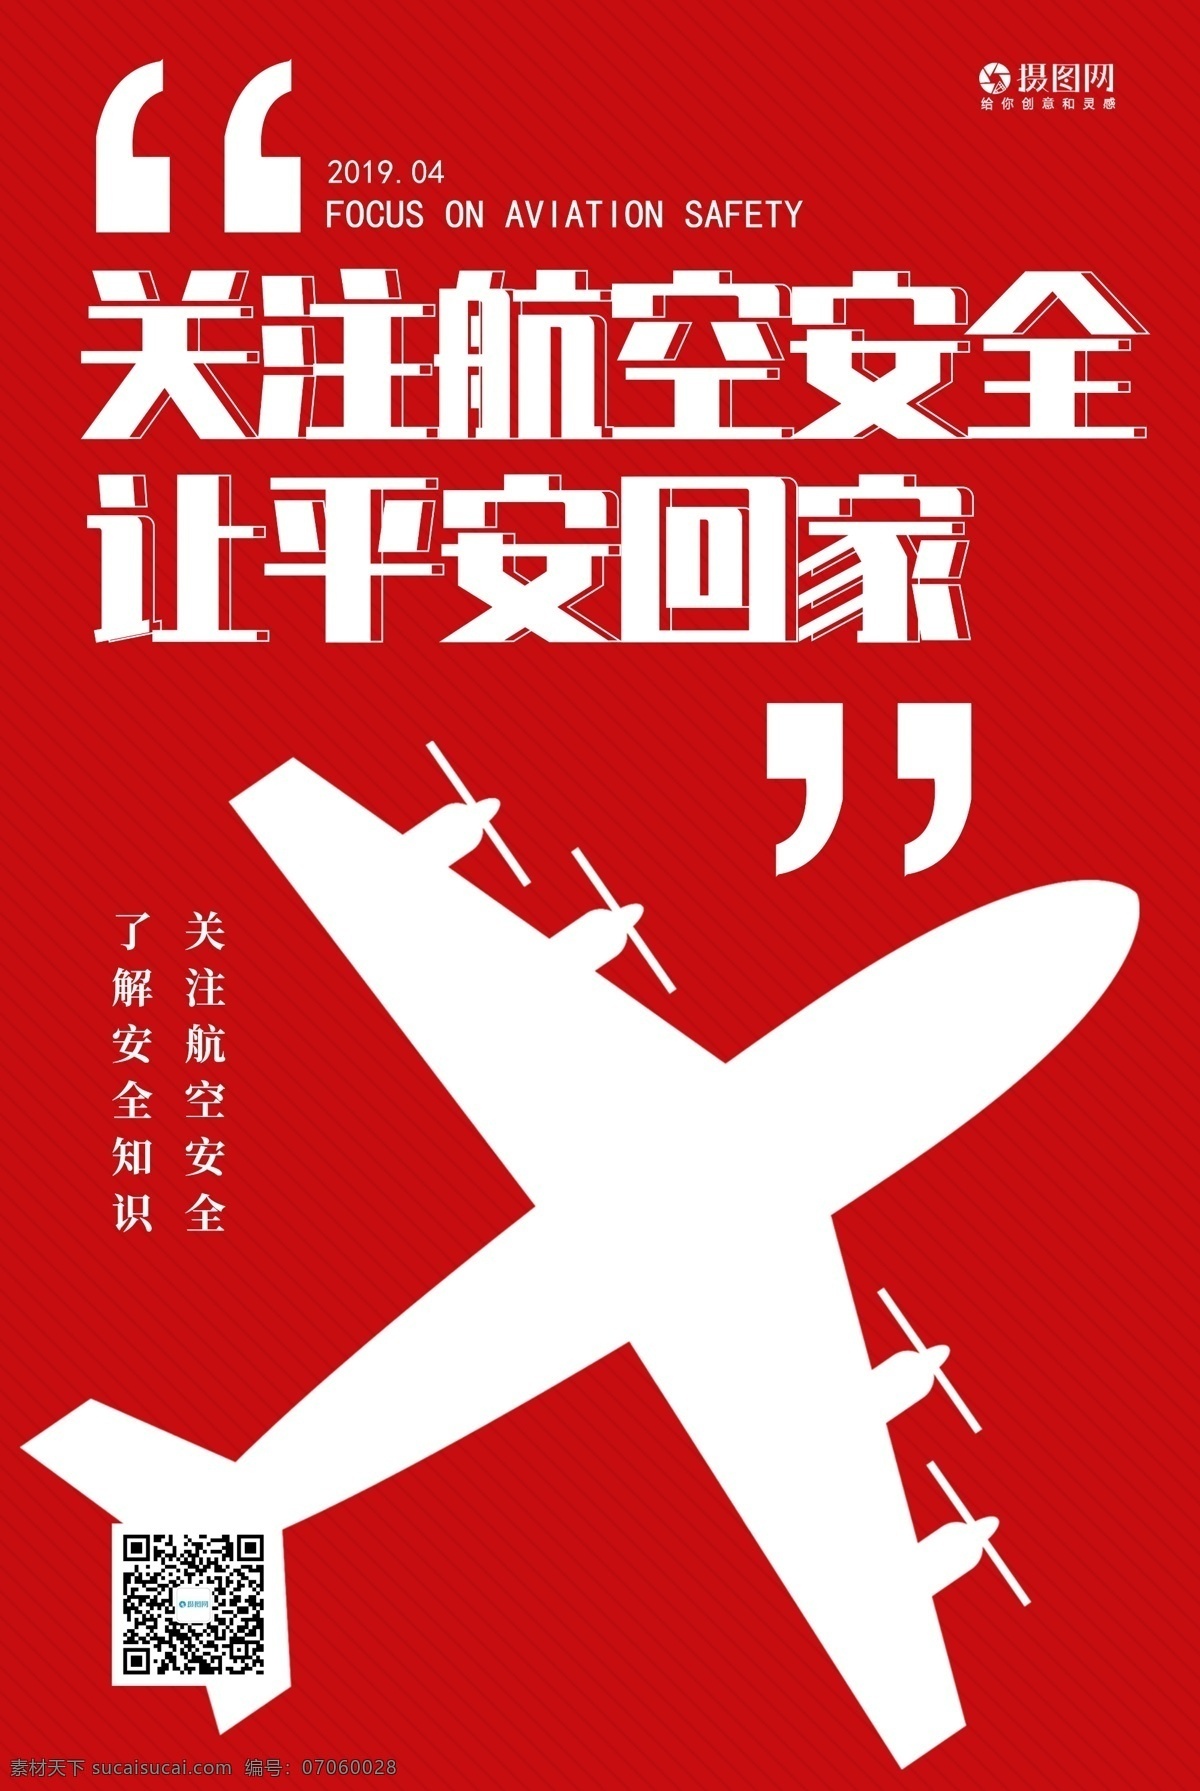 红色 关注 航空 安全 平安 回家 宣传海报 航空安全 飞机 安全常识 安全知识 关注航空安全 飞机安全 飞行安全 宣传 公益